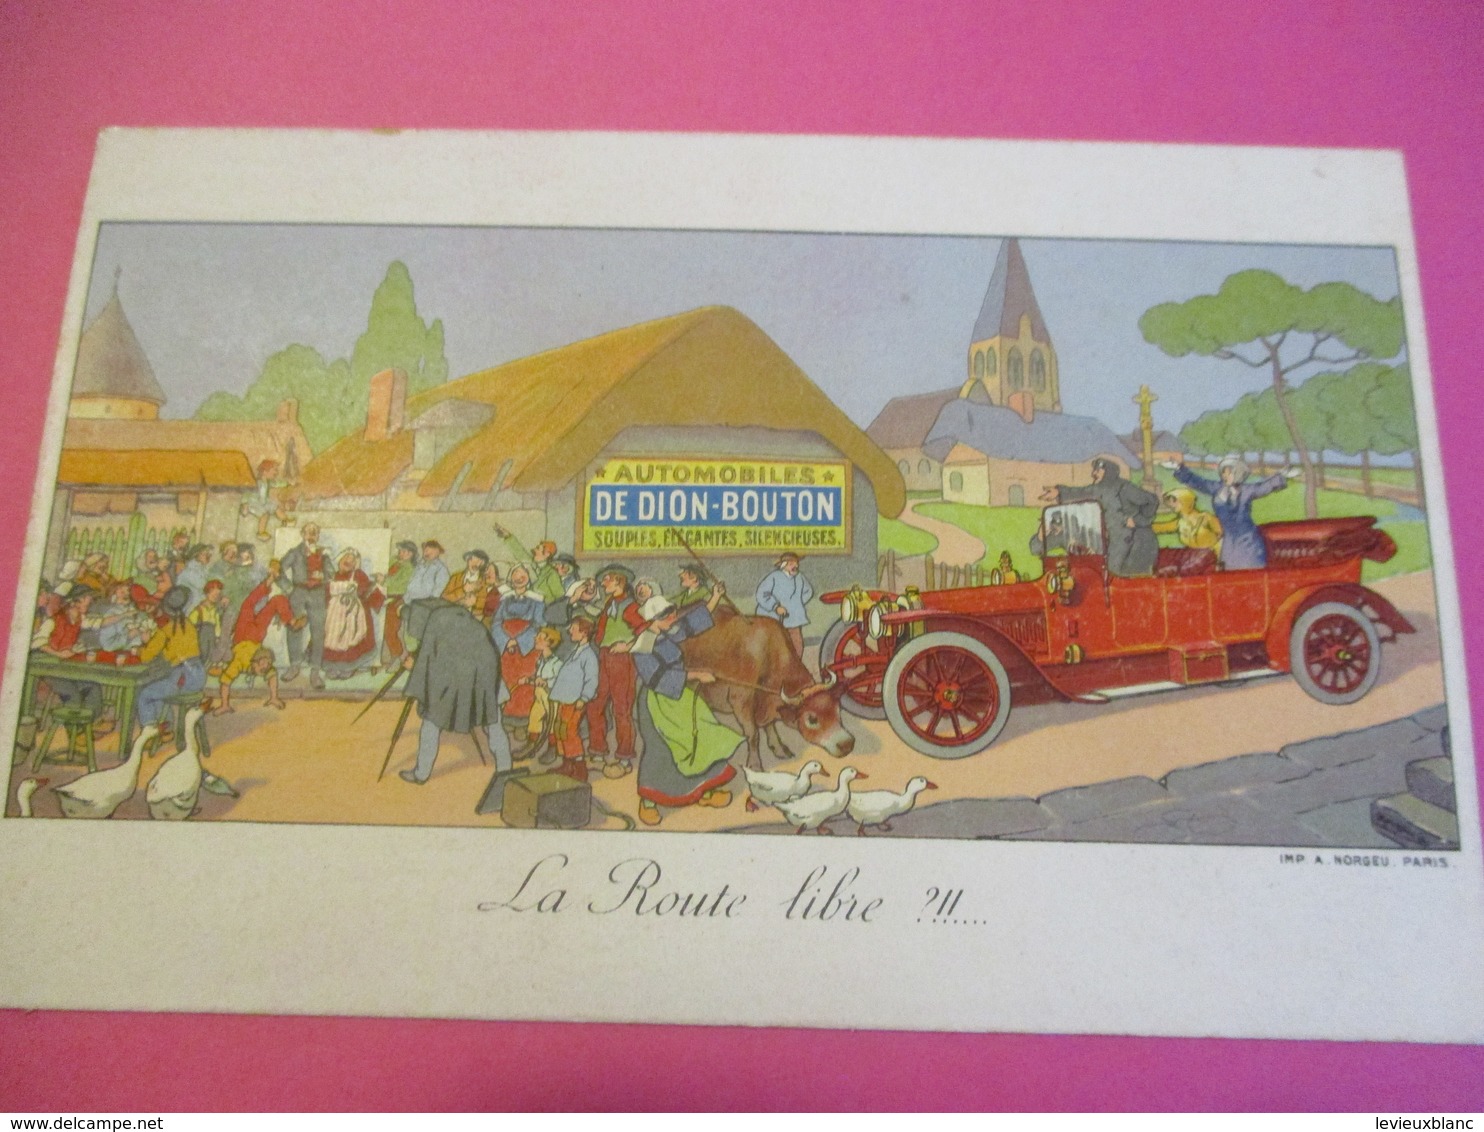 Carte Postale Publicitaire/Automobiles DE DION BOUTON/Souples élégantes Silencieuses/Vers 1905-1915   AC148 - PKW